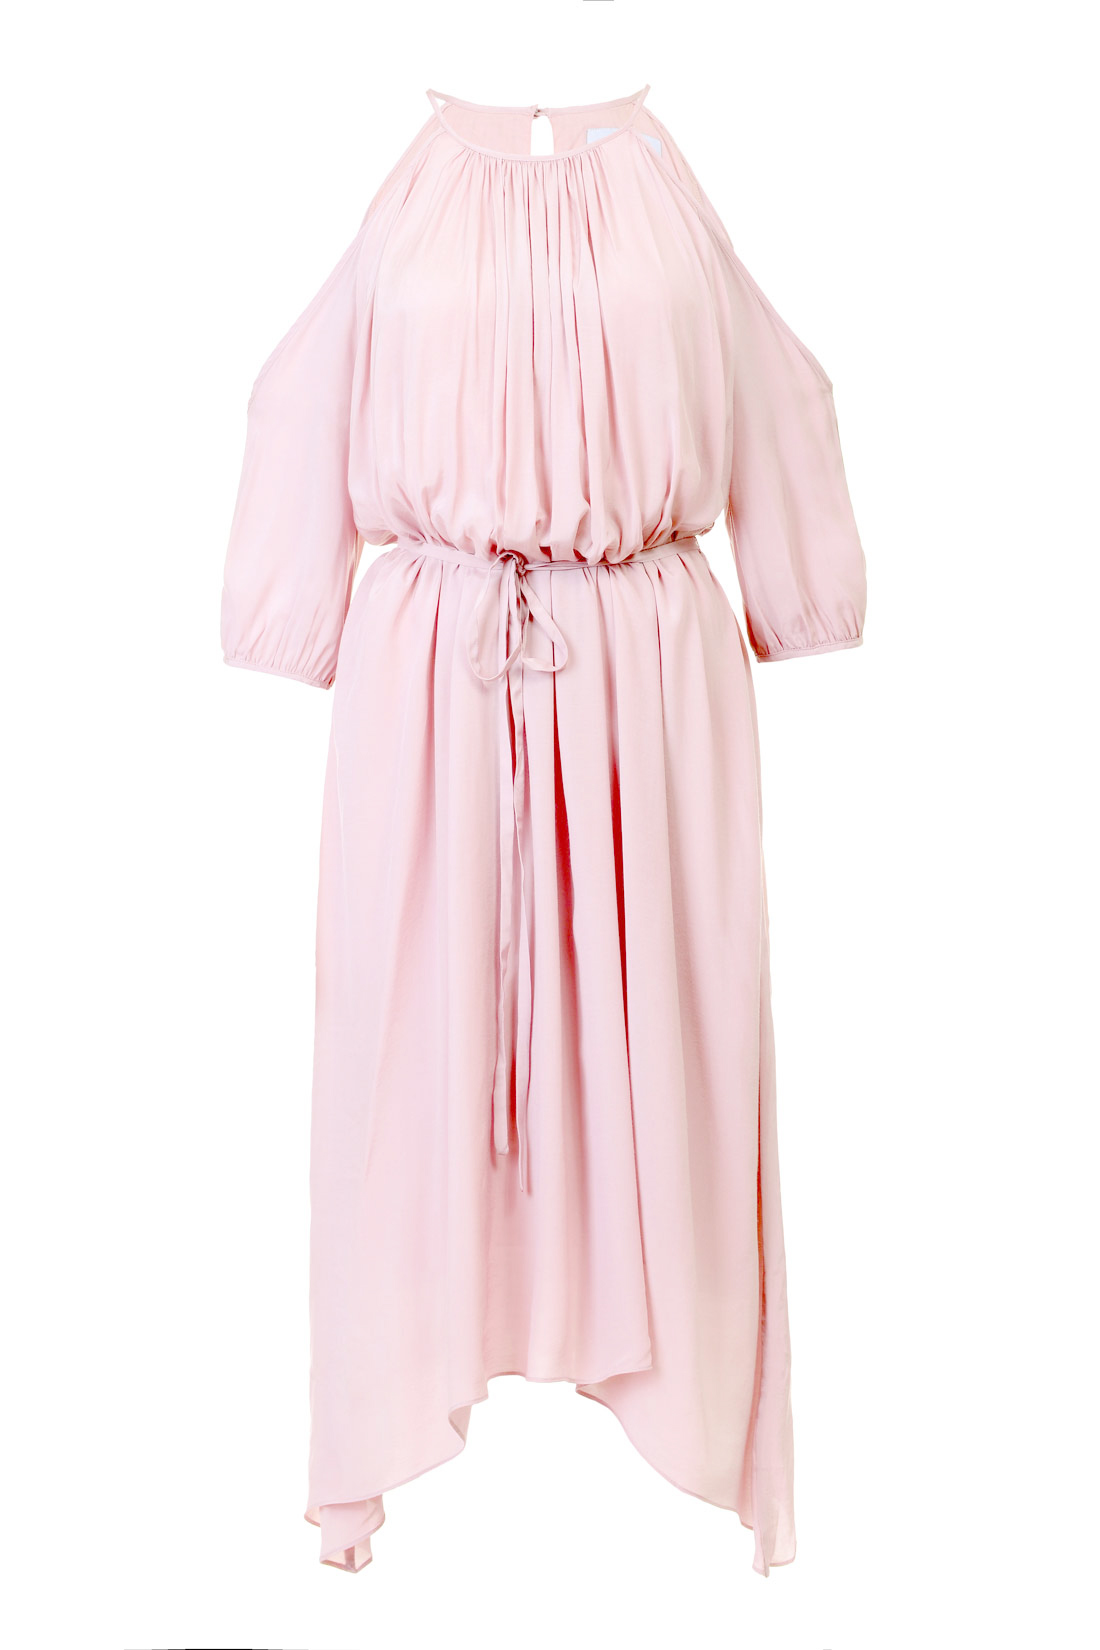 Платье-туника с открытыми плечами (арт. baon B457105), размер XL, цвет розовый Платье-туника с открытыми плечами (арт. baon B457105) - фото 3